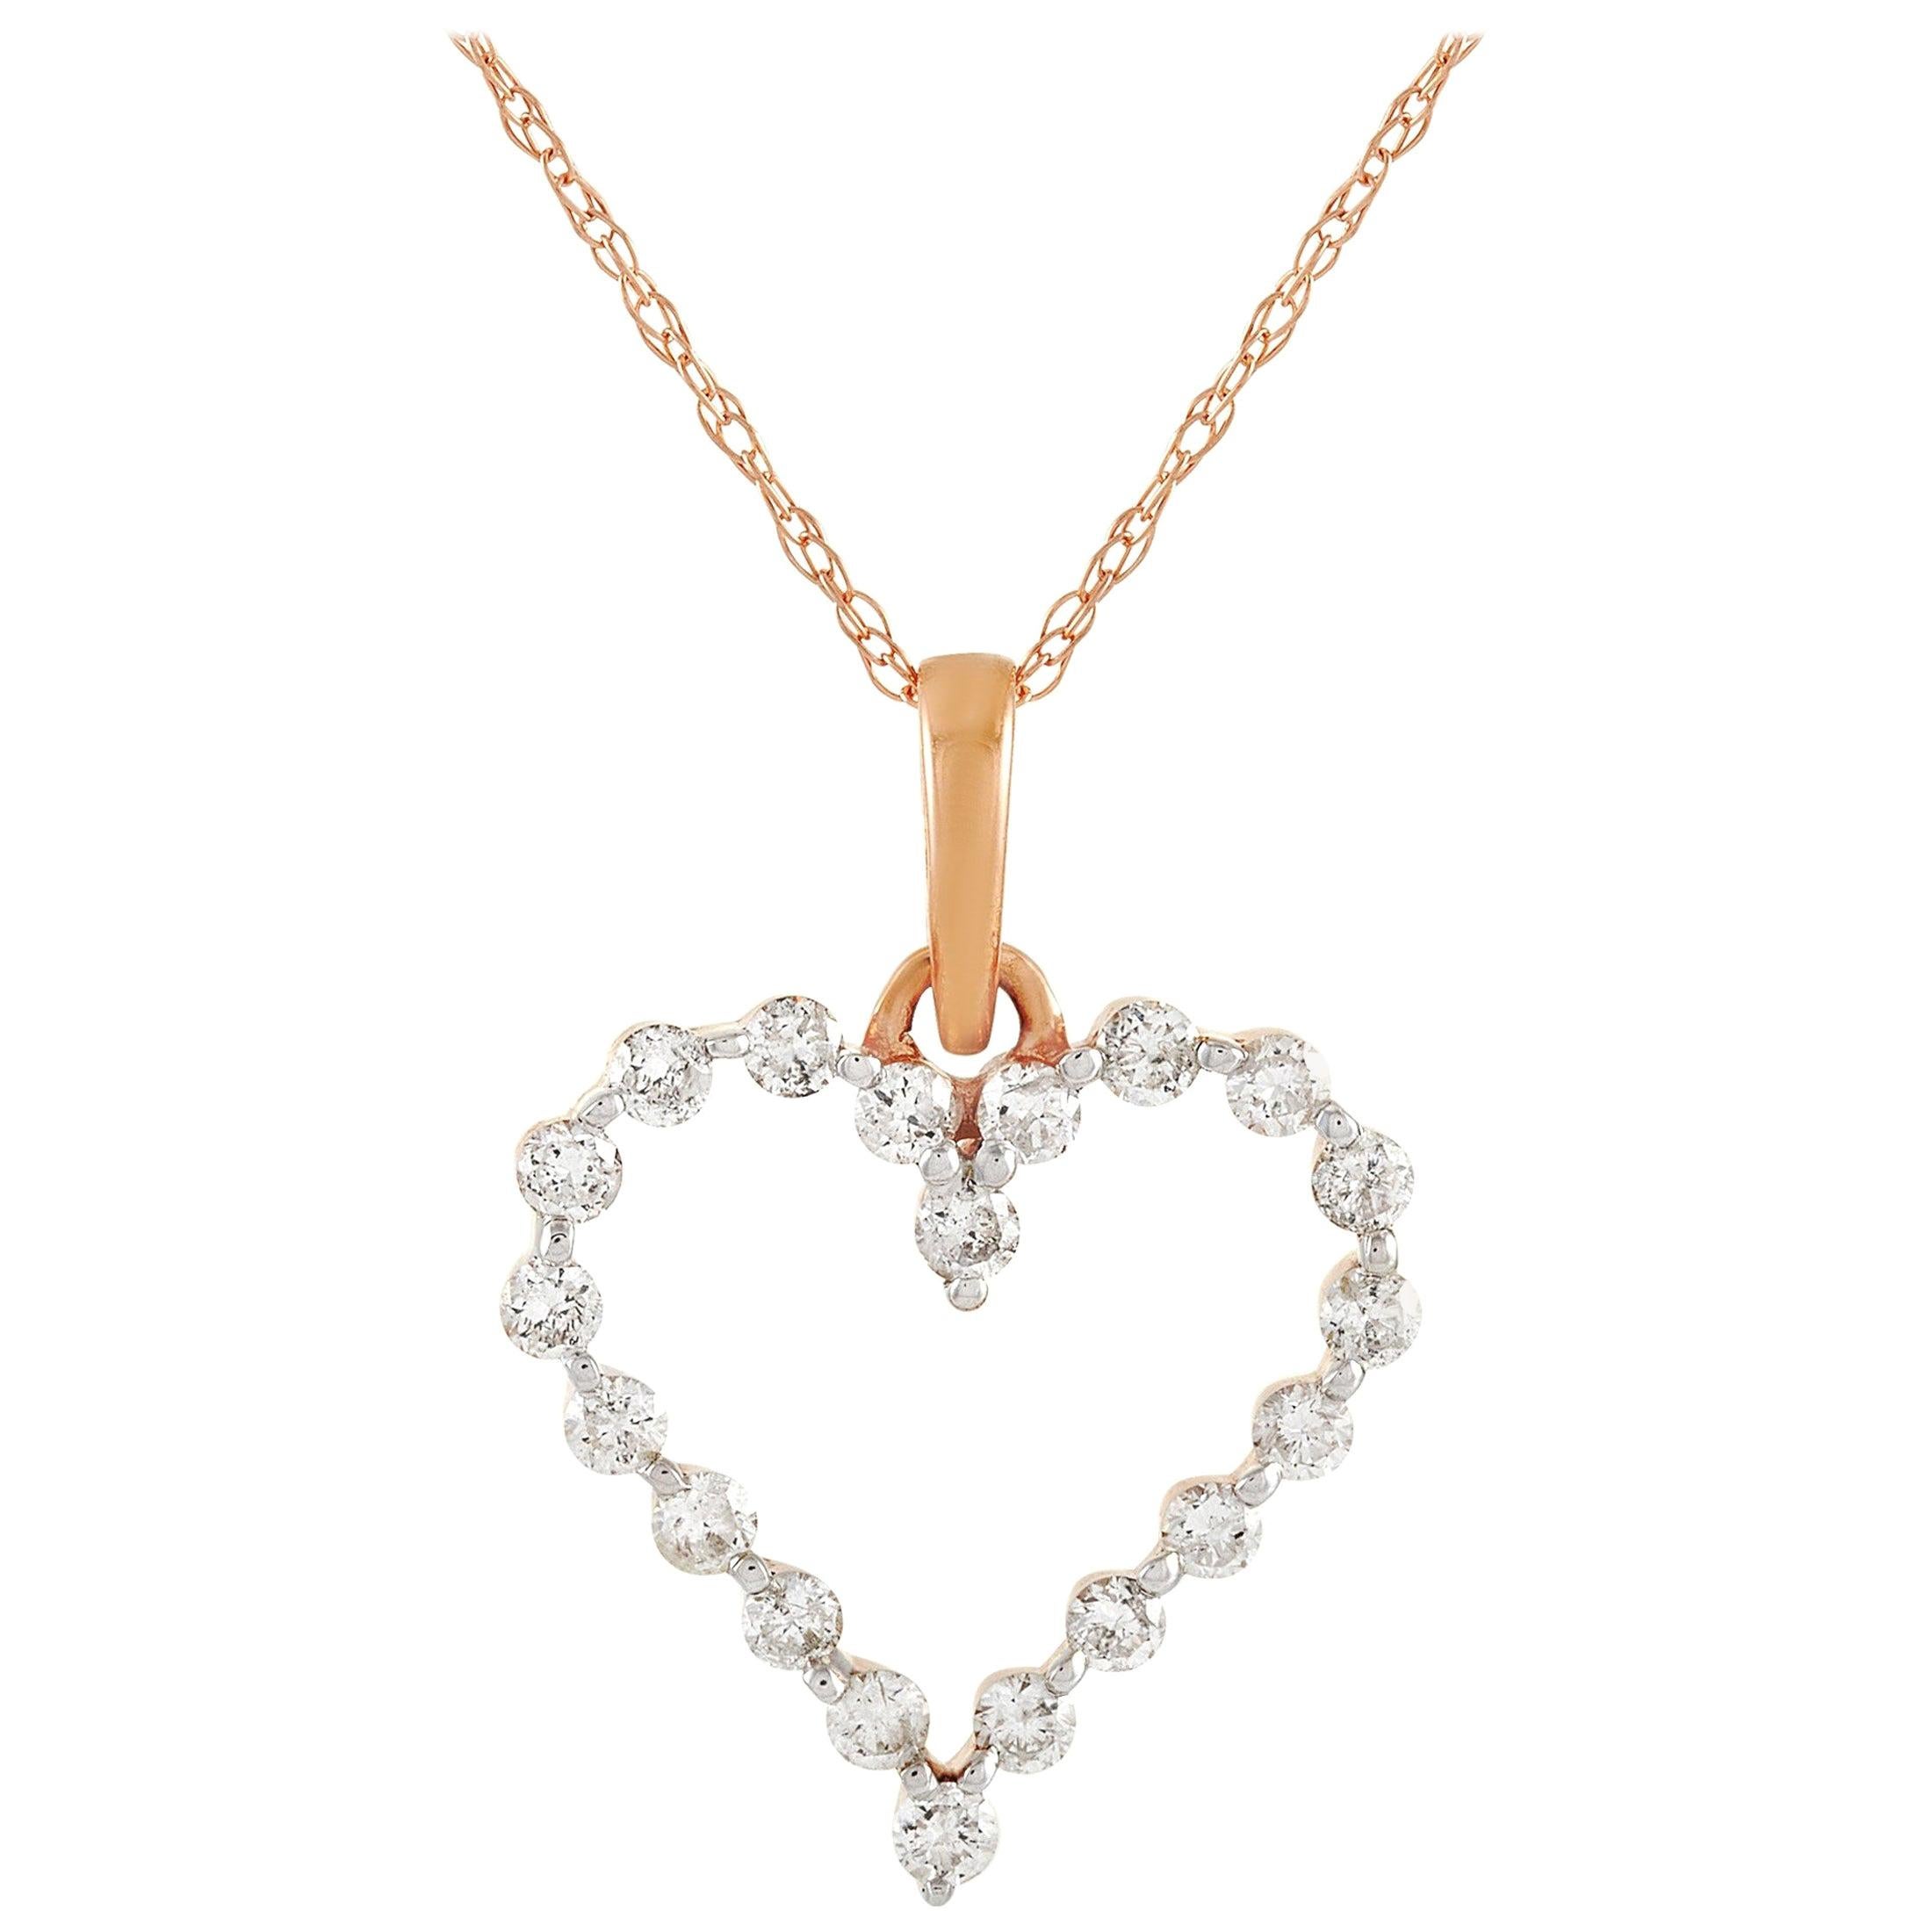 LB Exclusive LB Exclusive 14K Gold 0.33 Carat Diamond Heart Pendant Necklace